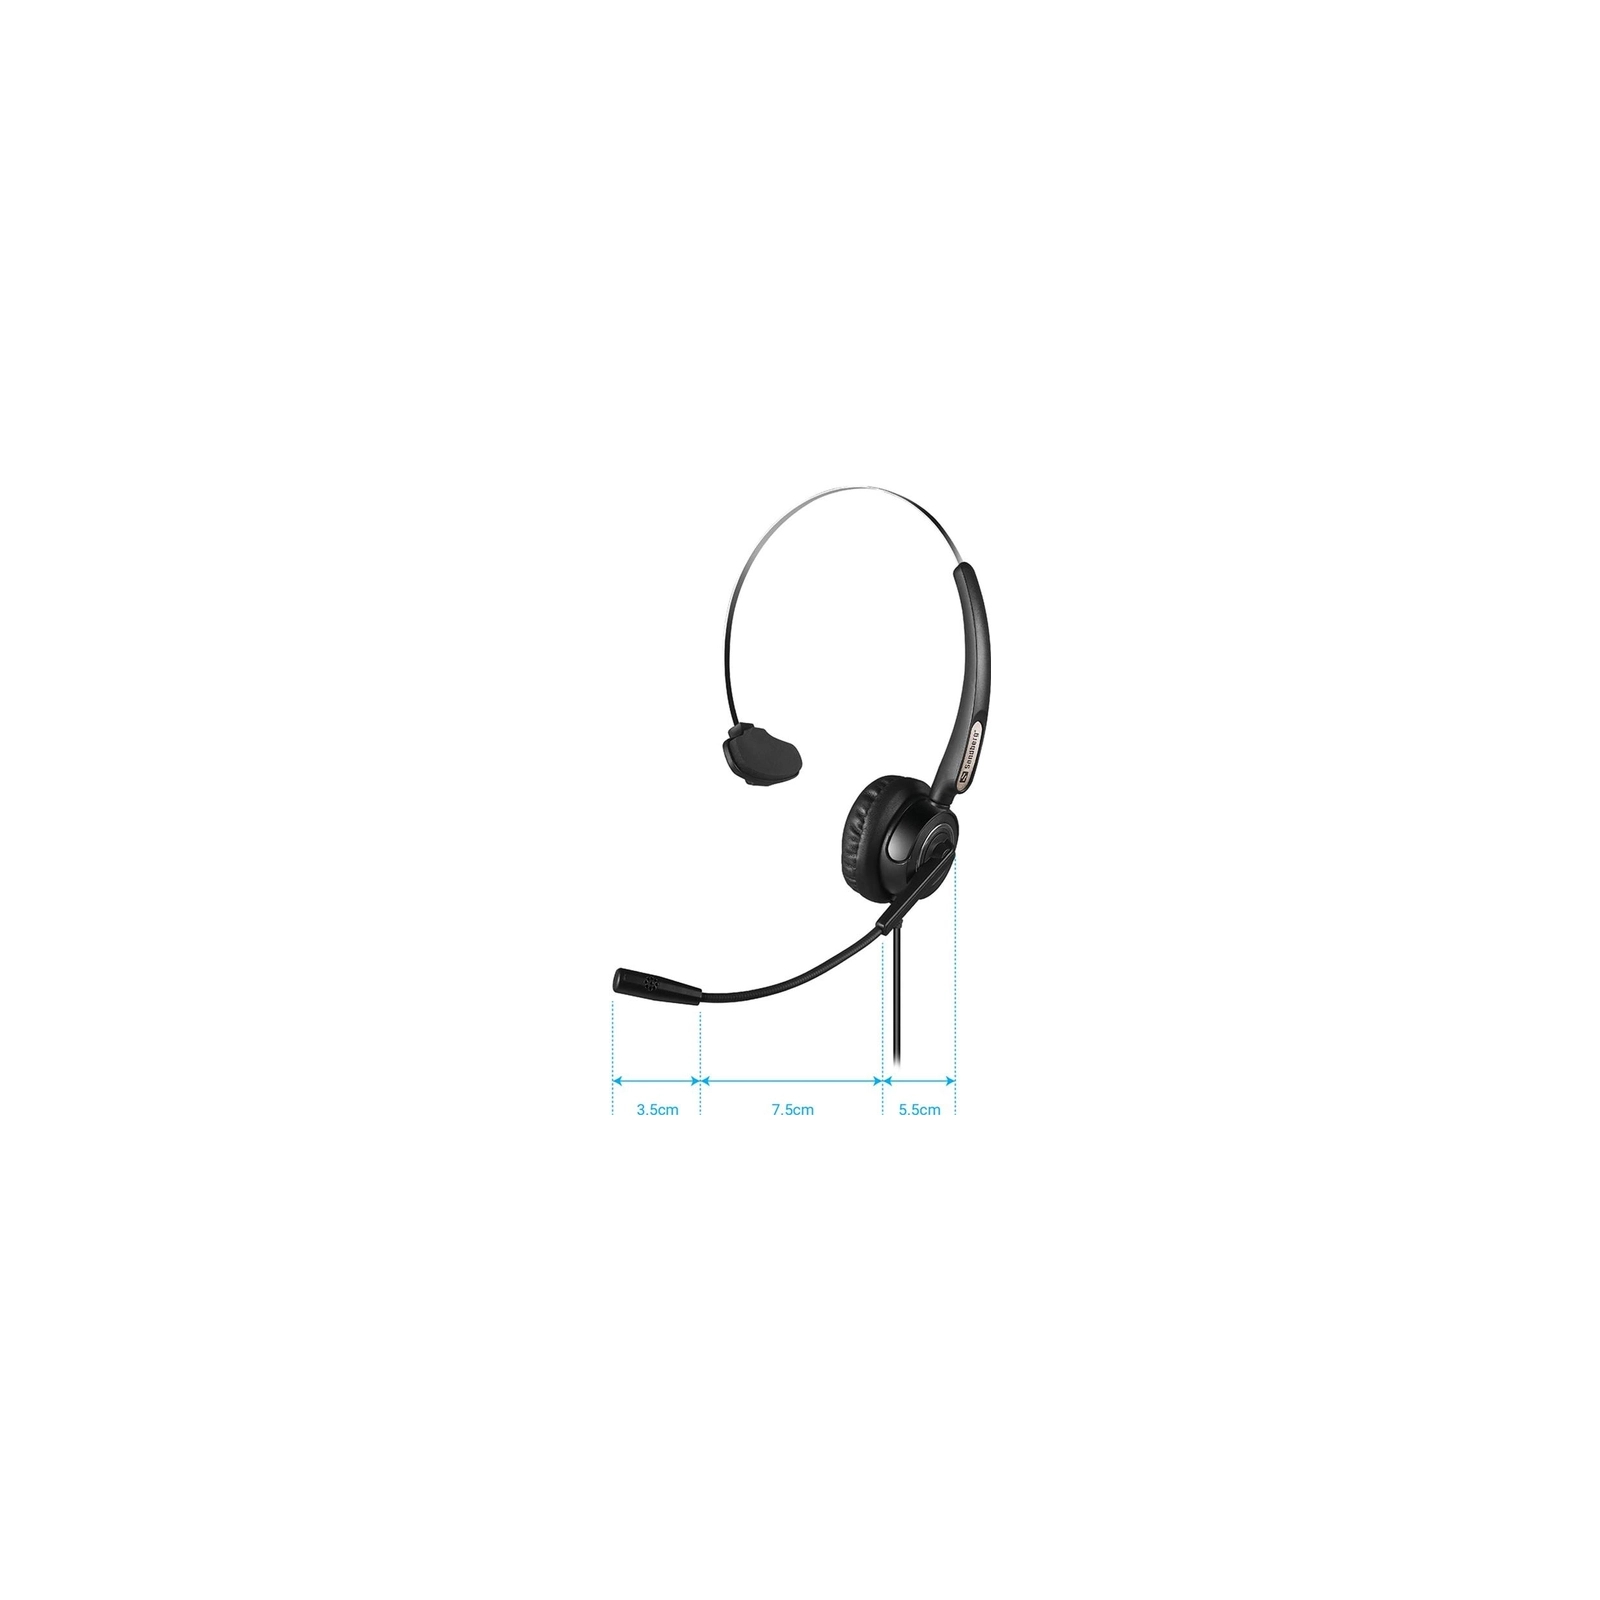 Навушники Sandberg USB Office Headset Pro Mono (126-14) зображення 4